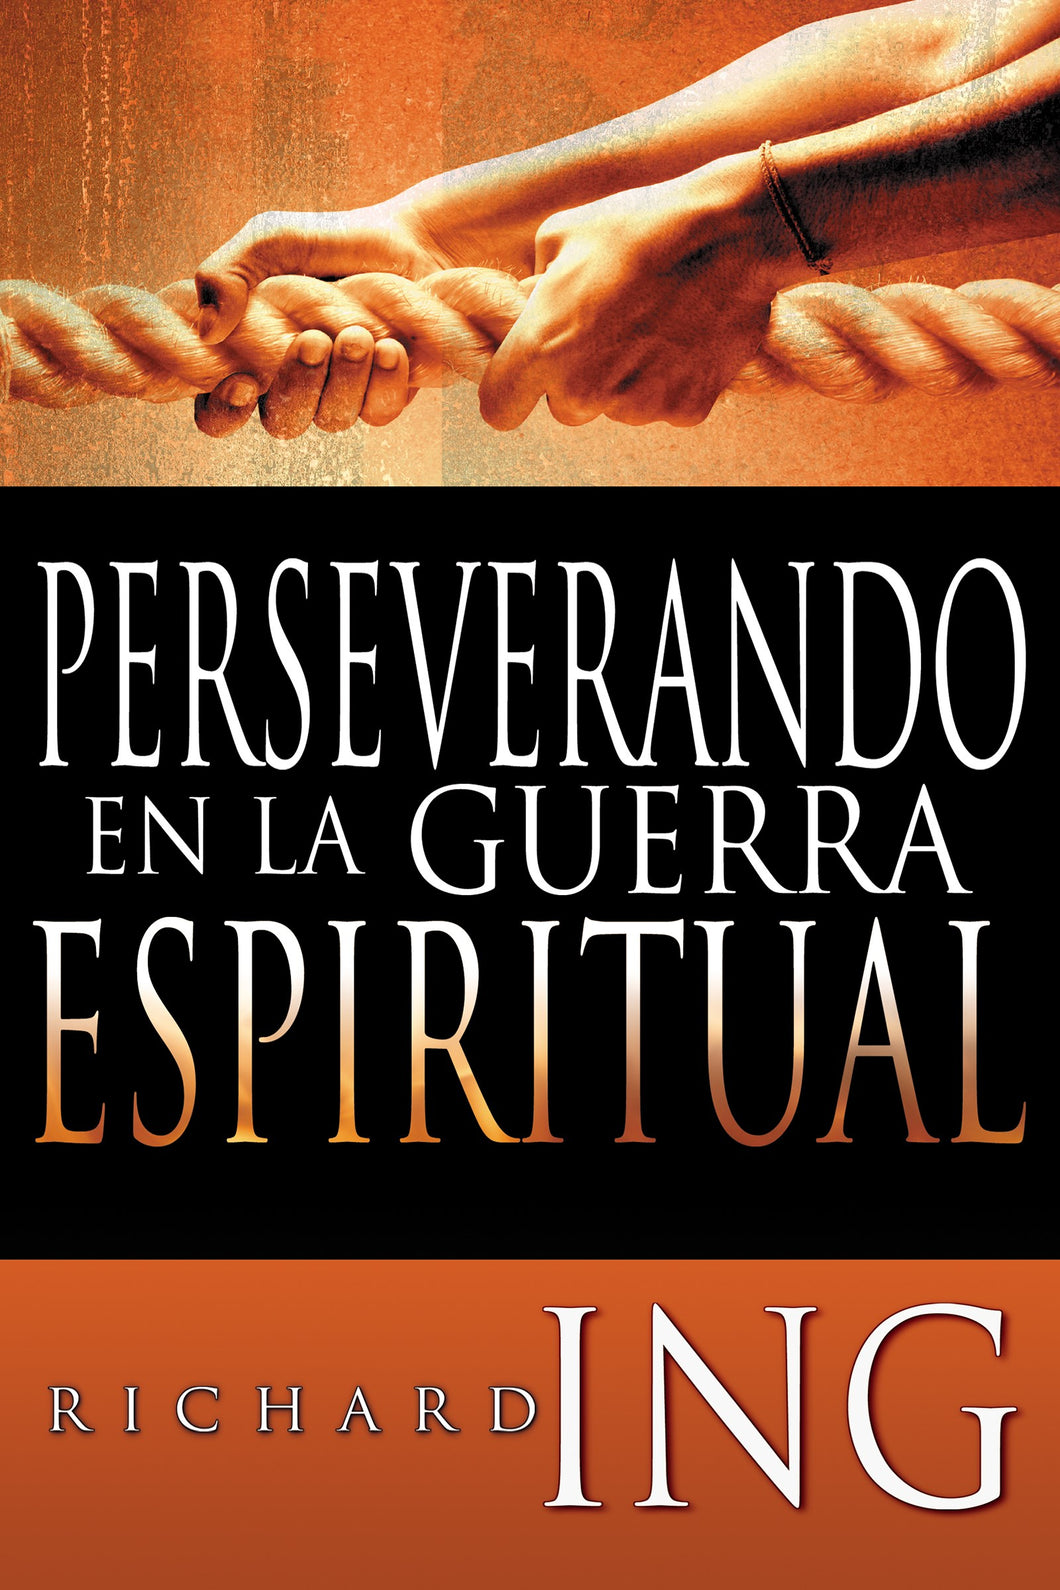 Spanish-Waging Spiritual Warfare